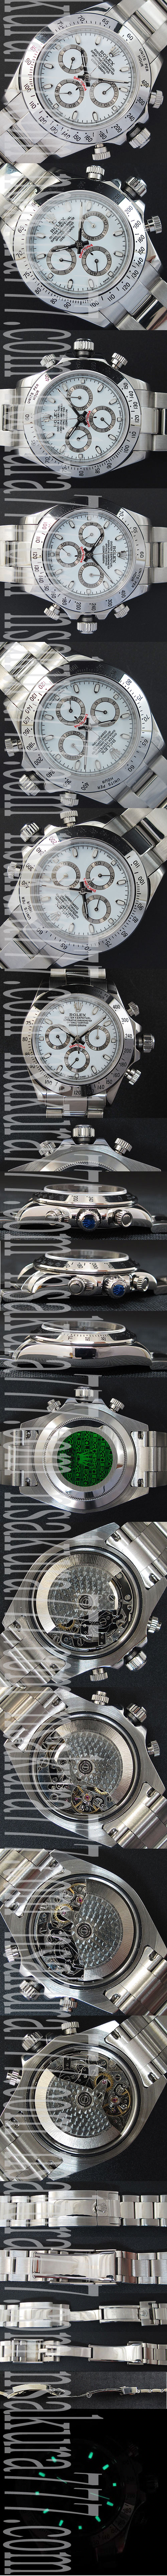 信頼の腕時計ストア ROLEX ロレックス デイトナ Asian 7750搭載 ! 自動巻き クロノグラフ シルバーホワイトダイアル 夜光